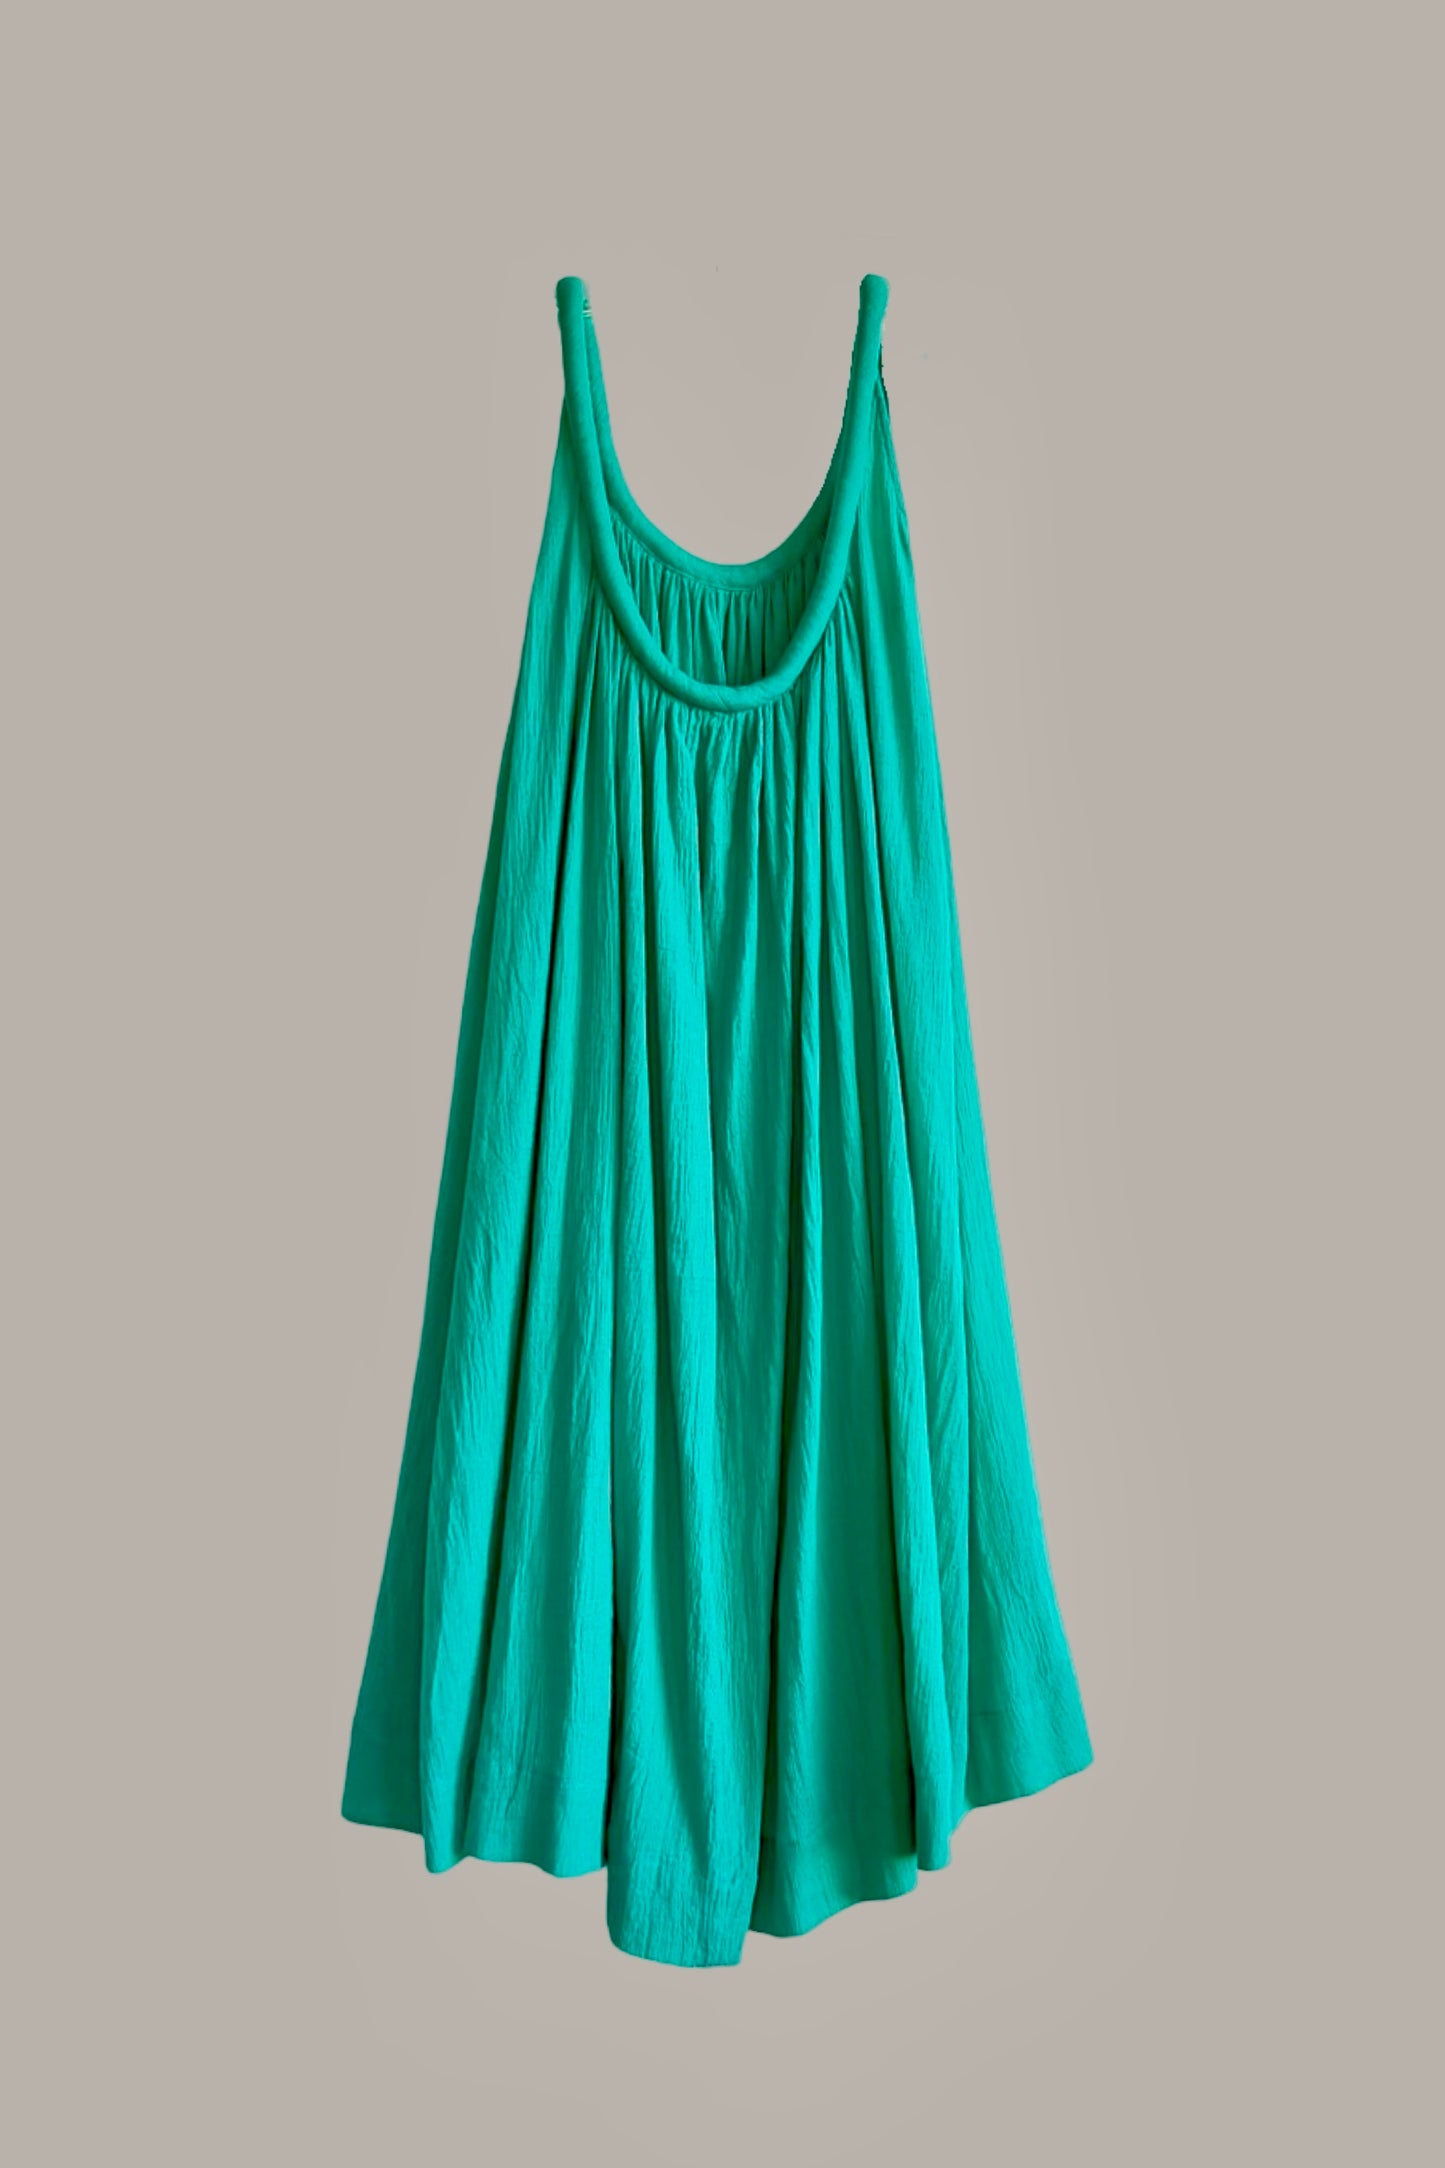 Sahara Chemise Dress Turquoise Cotton Gauze